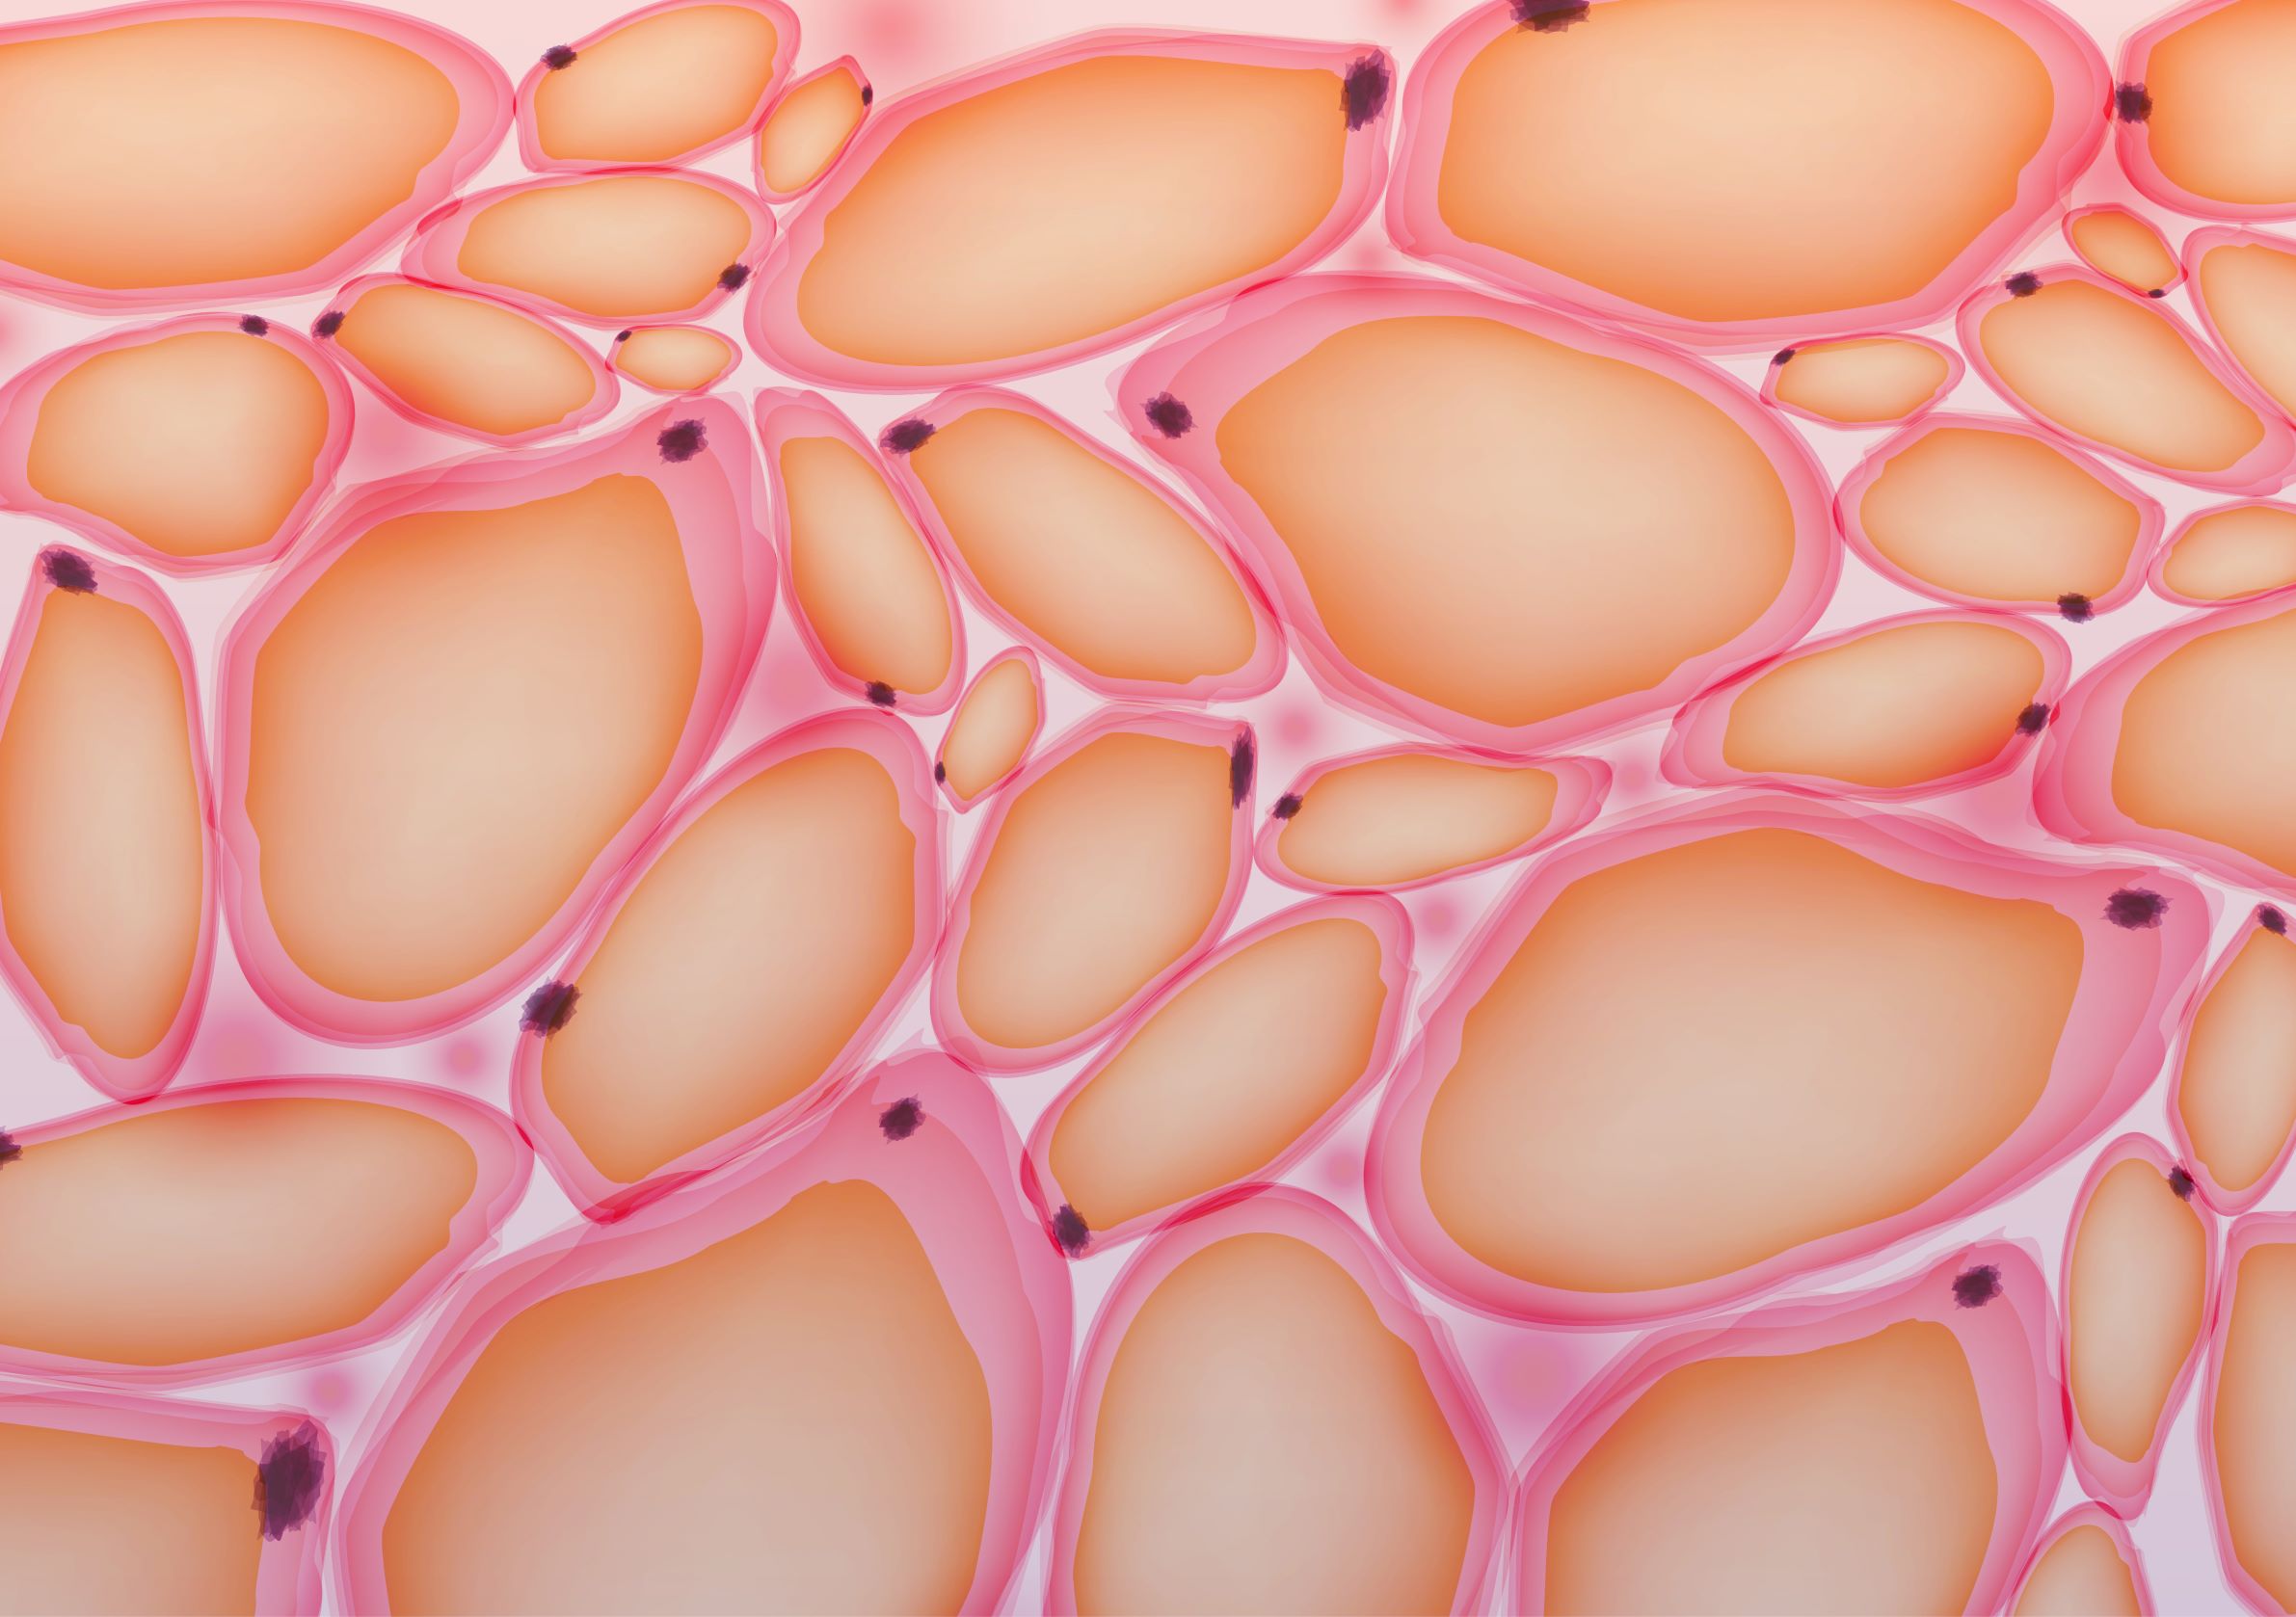 Жировая ткань латынь. Адипоциты жировой ткани. Жировые клетки адипоциты. Адипоциты гистология. Жировые клетки под микроскопом.